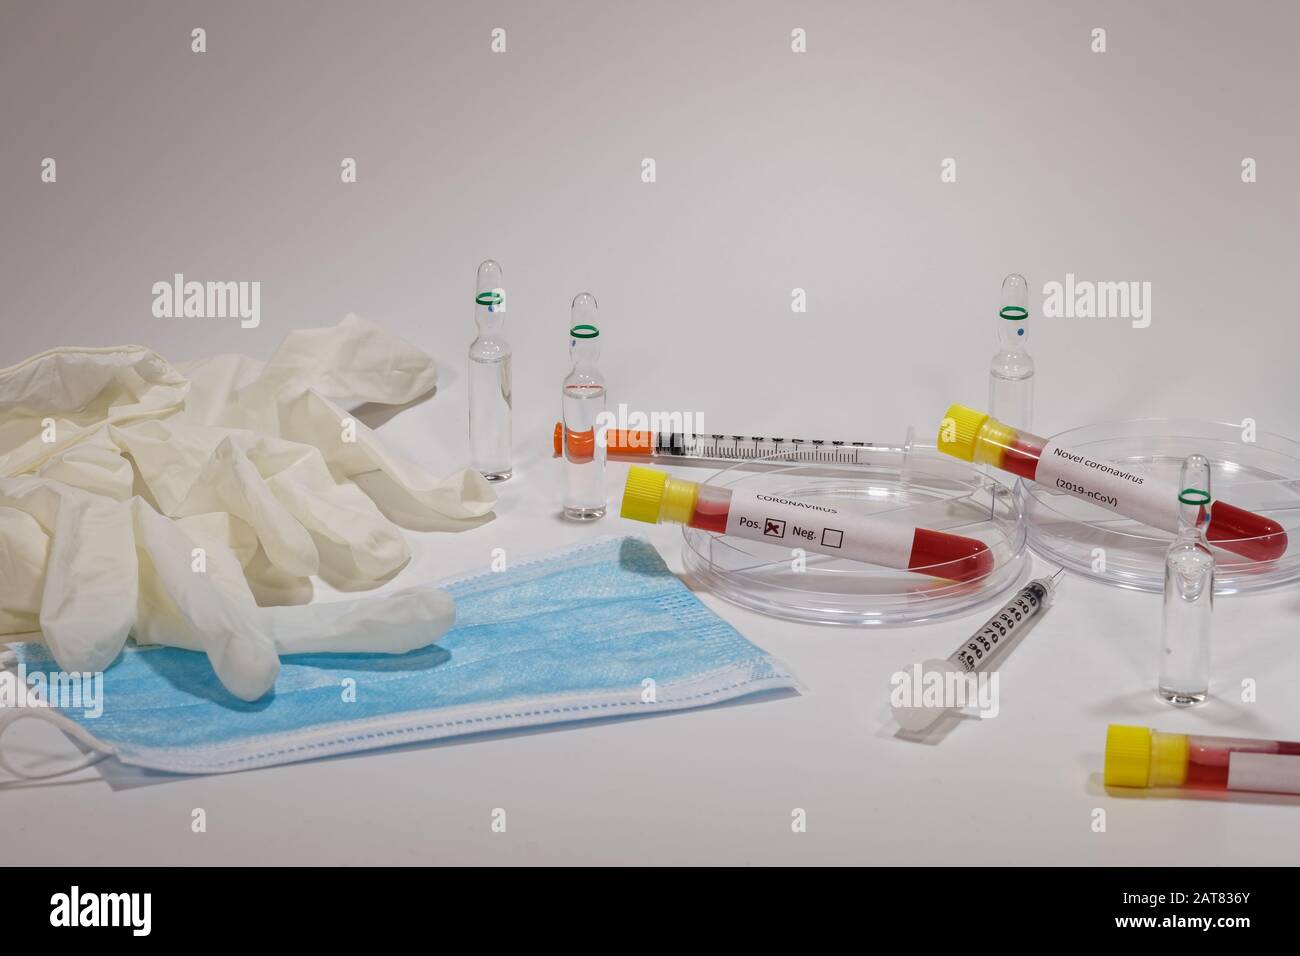 Test clinique de laboratoire de microbiologie Wuhan Coronavirus COVID-19 2019-nCoV. Équipements médicaux de laboratoire tels que tubes à sang, seringues, masques et gants vacutainer Banque D'Images